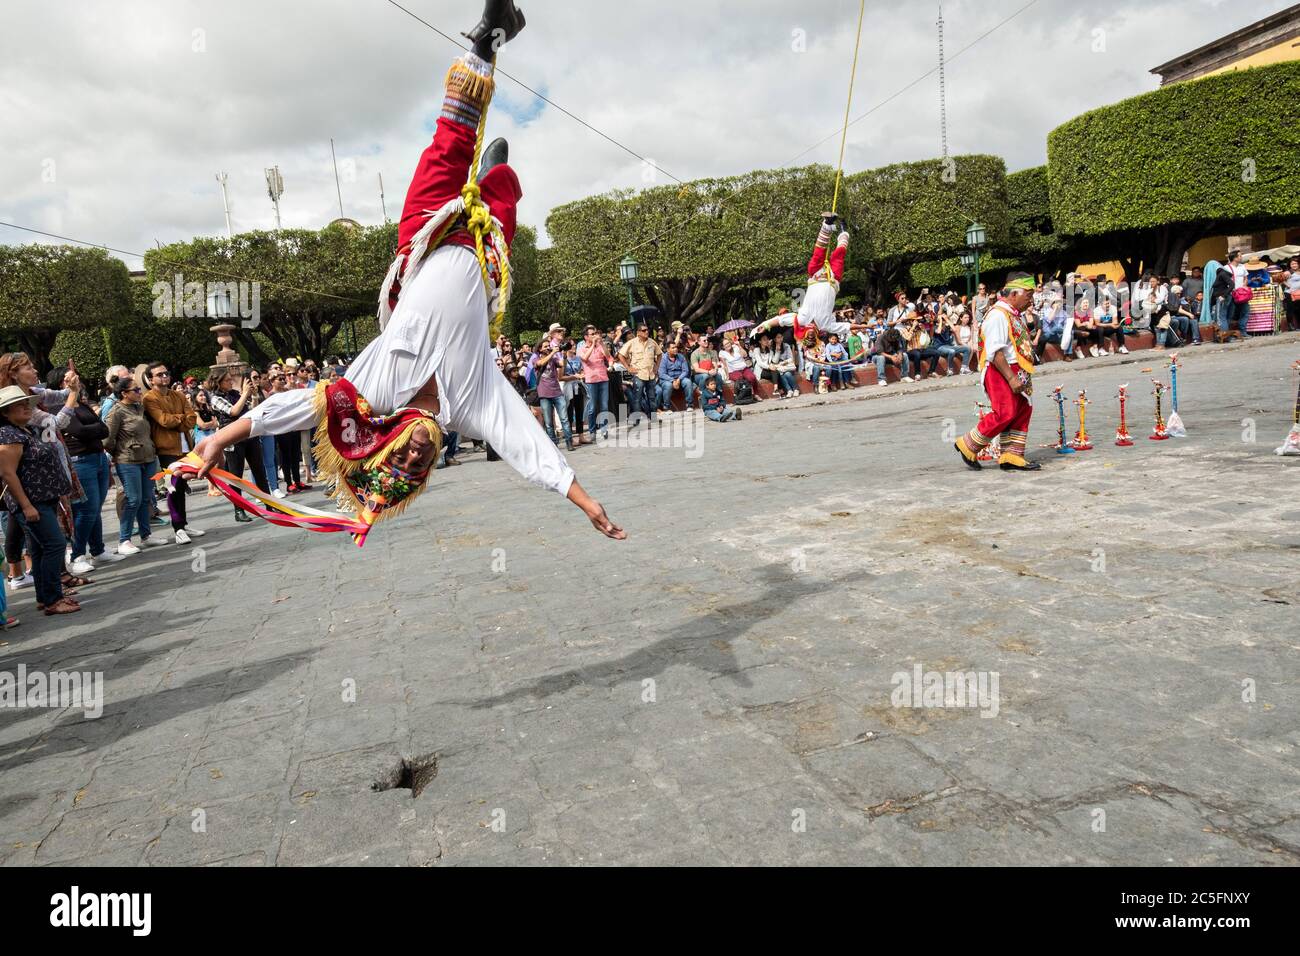 Les célèbres Voladores de Papantla, les Flyers de Papantla, exécutent leur ancienne cérémonie méso-américaine dans le jardin Allende pendant la semaine de la fête du patron saint Michel à San Miguel de Allende, Mexique. Banque D'Images